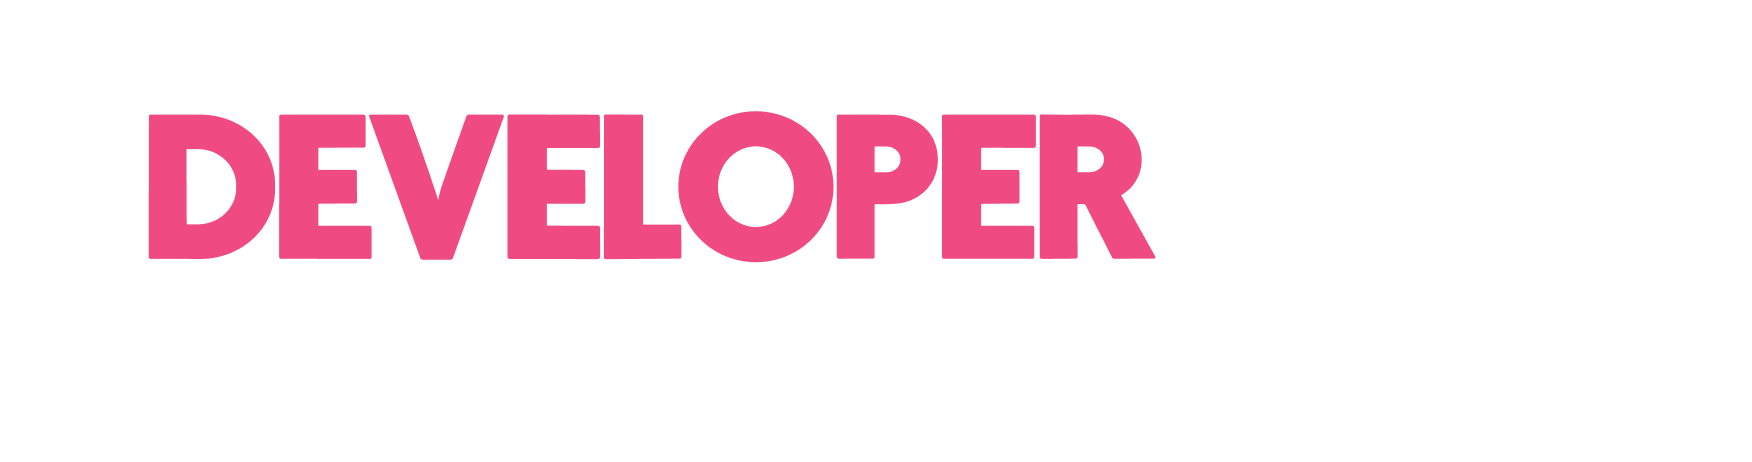 DeveloperWeek San Fransisco